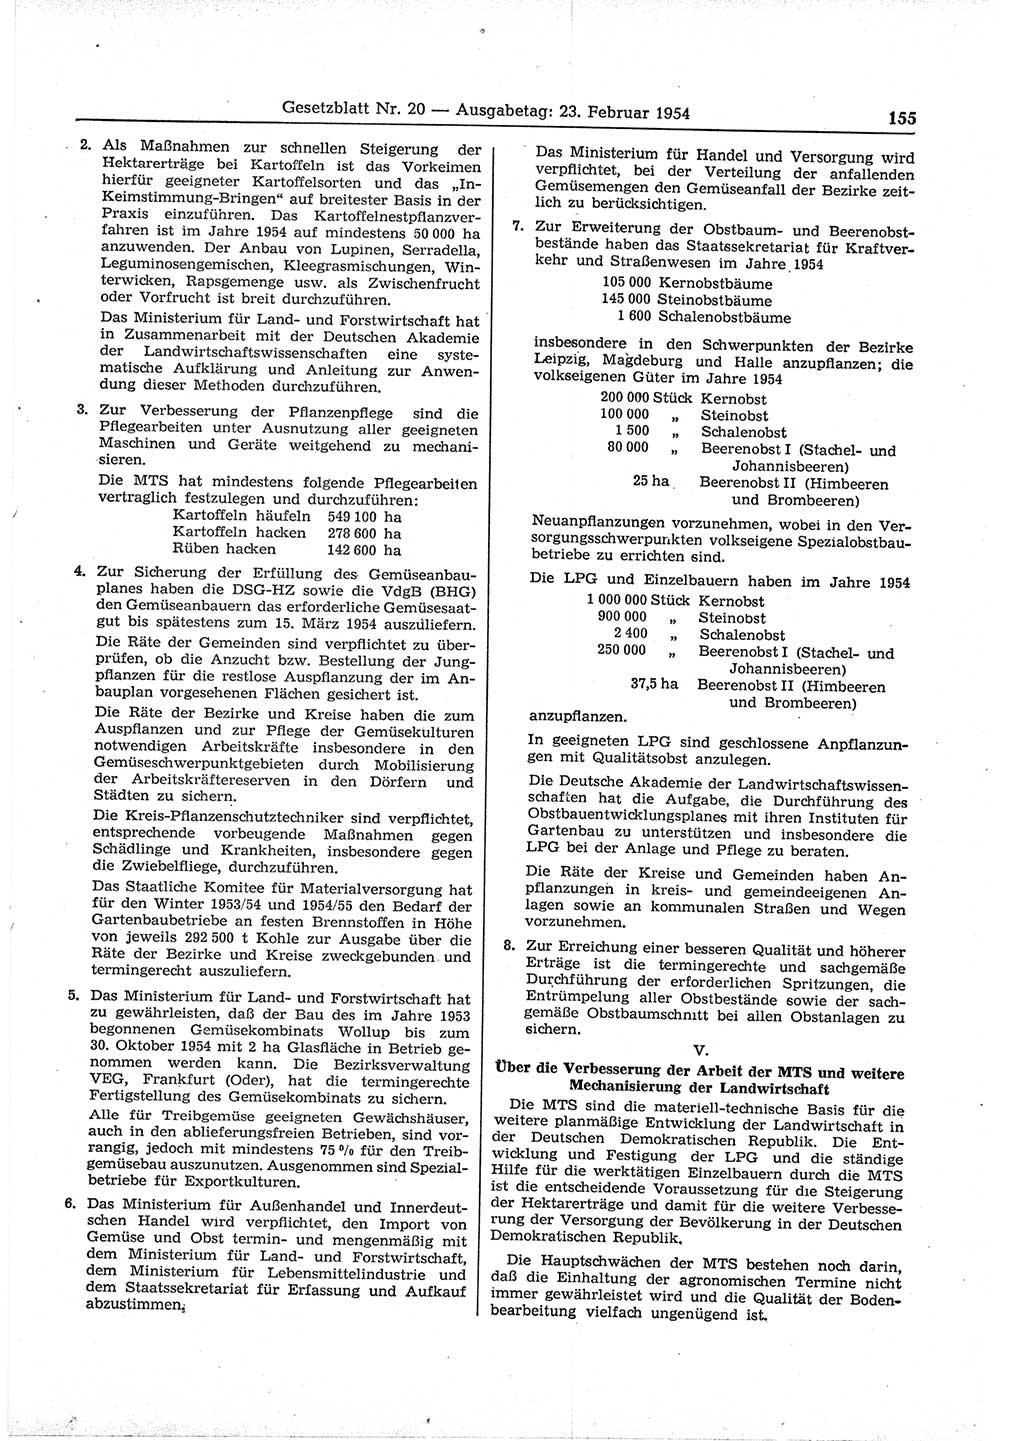 Gesetzblatt (GBl.) der Deutschen Demokratischen Republik (DDR) 1954, Seite 155 (GBl. DDR 1954, S. 155)